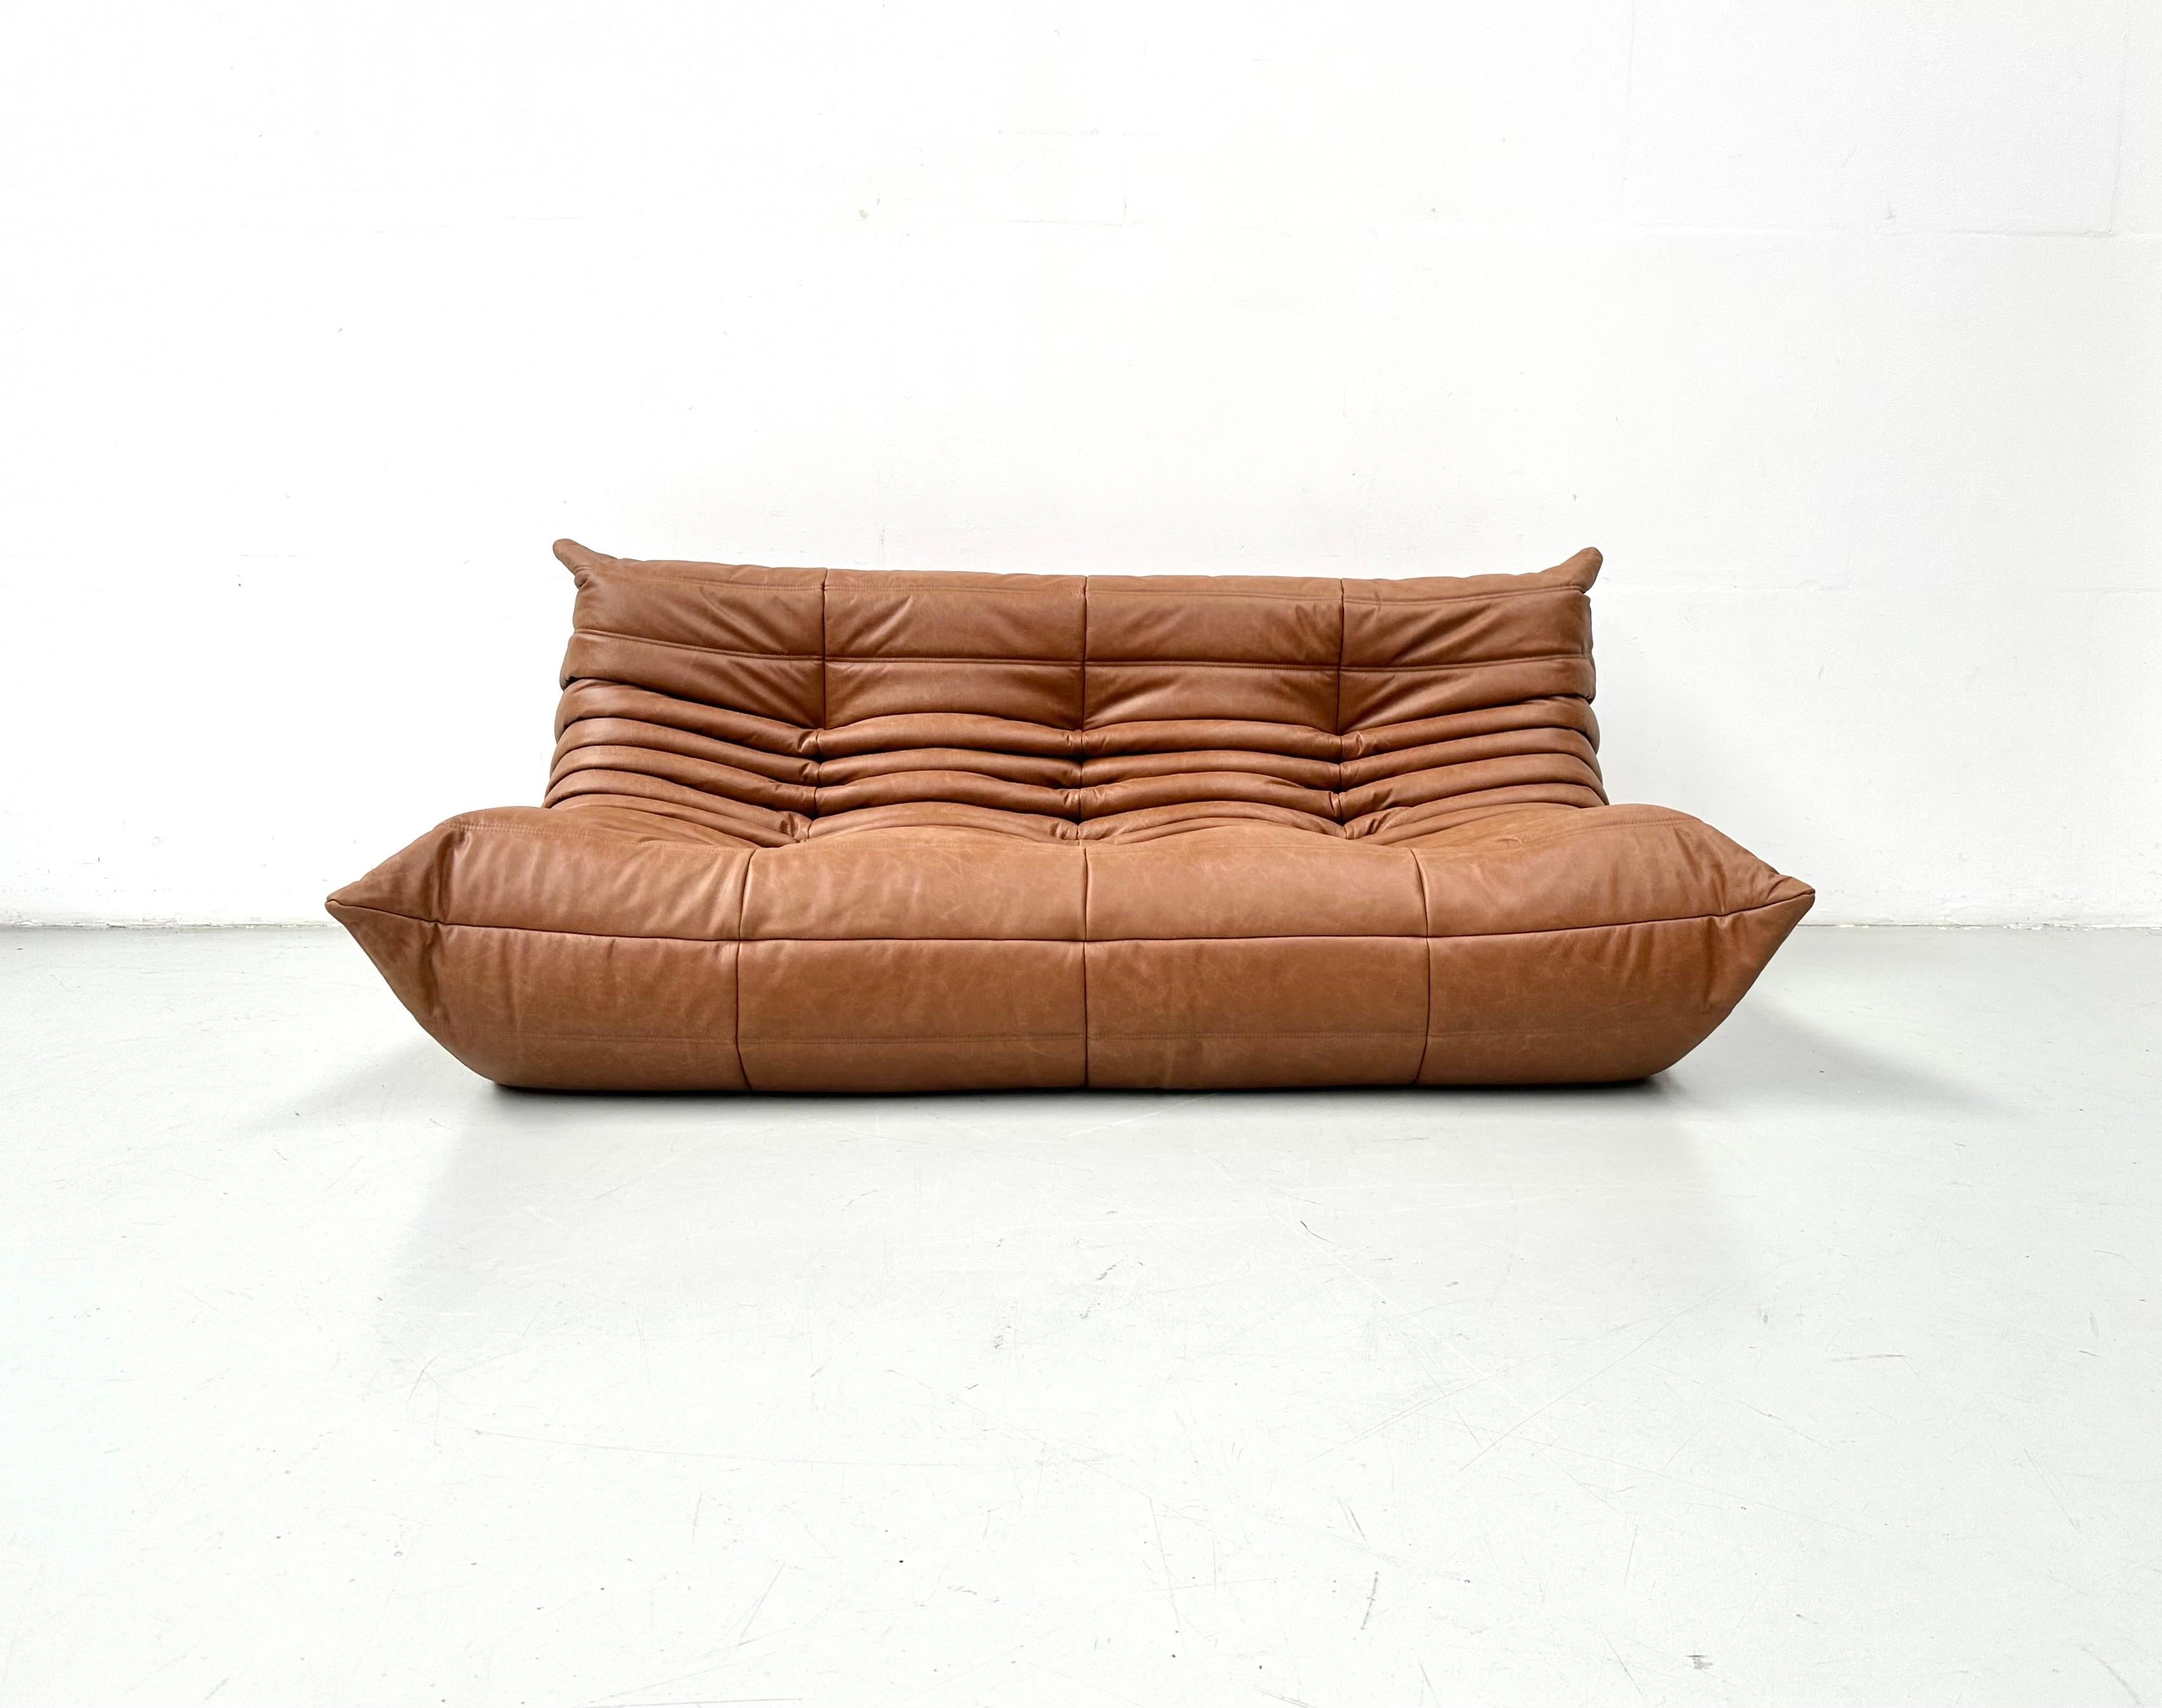 Der Togo wurde 1973 von Michel Ducaroy für Ligne Roset entworfen. Es ist das erste Sofa/Sessel, das nur aus Schaumstoff und Leder besteht. Die Collection'S zeichnet sich durch ein ergonomisches Design mit Polyätherschaum-Konstruktion und